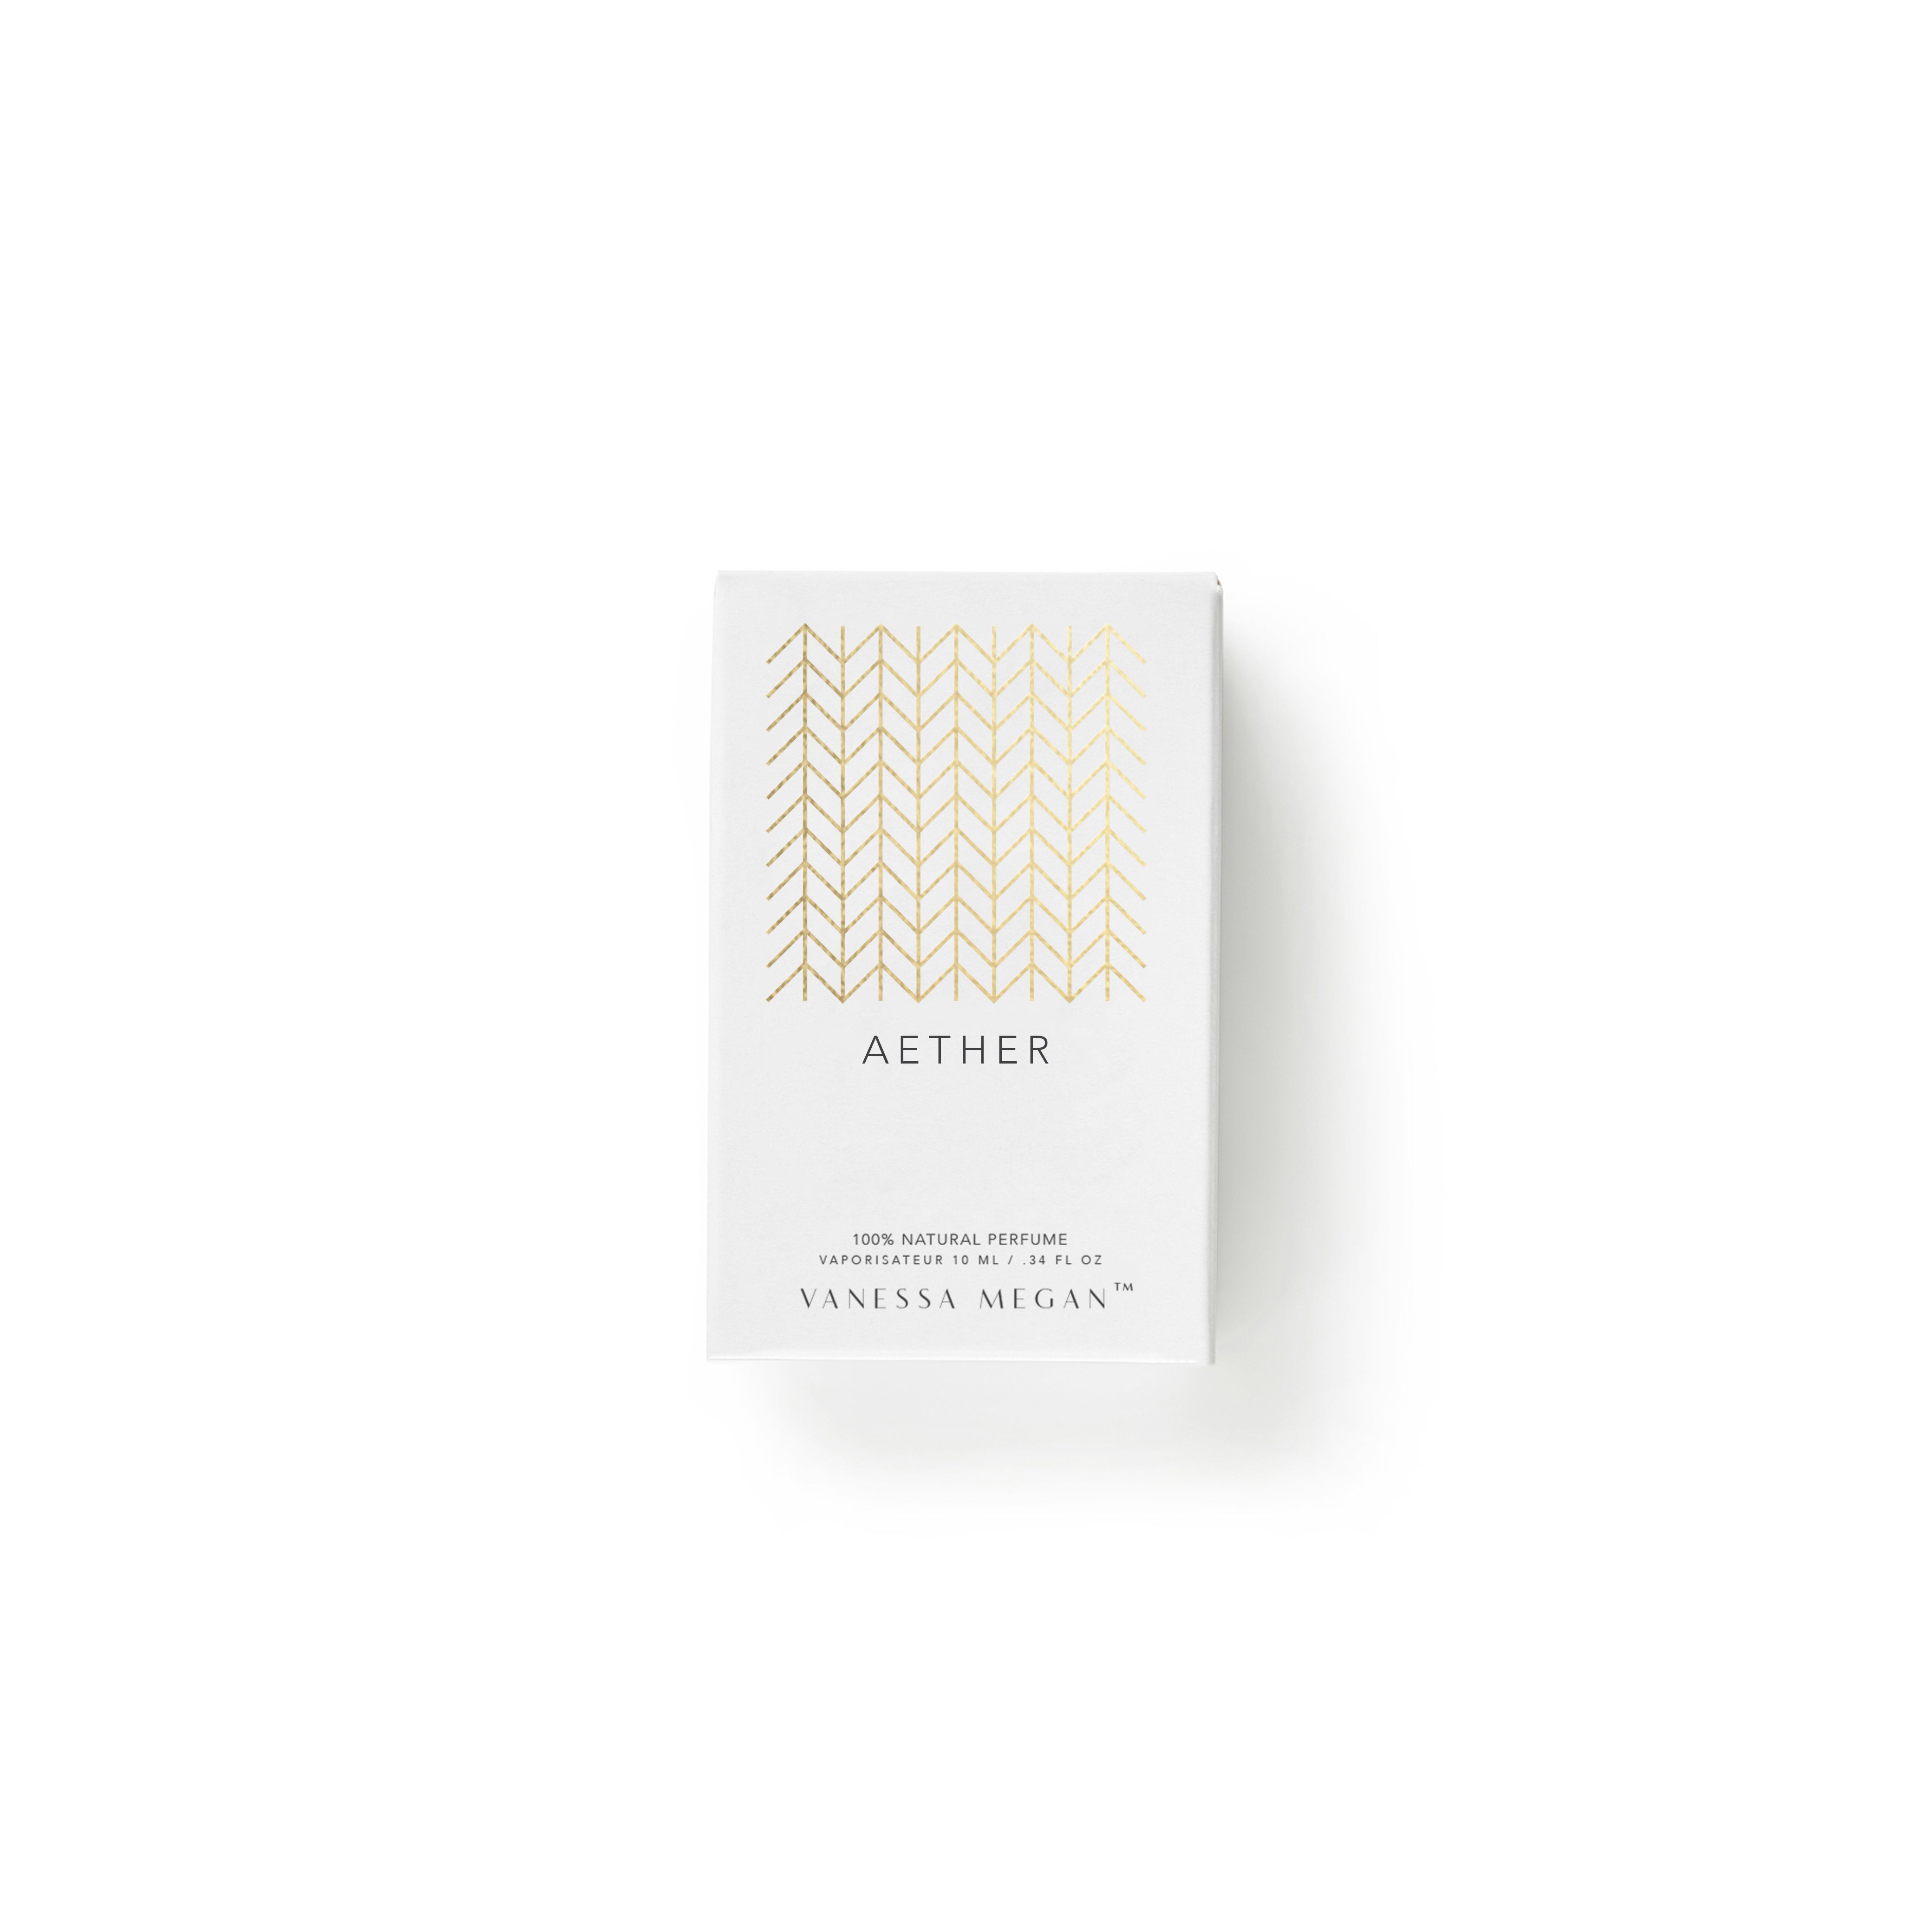 Aether | 100% Natural Mood Enhancing Perfume